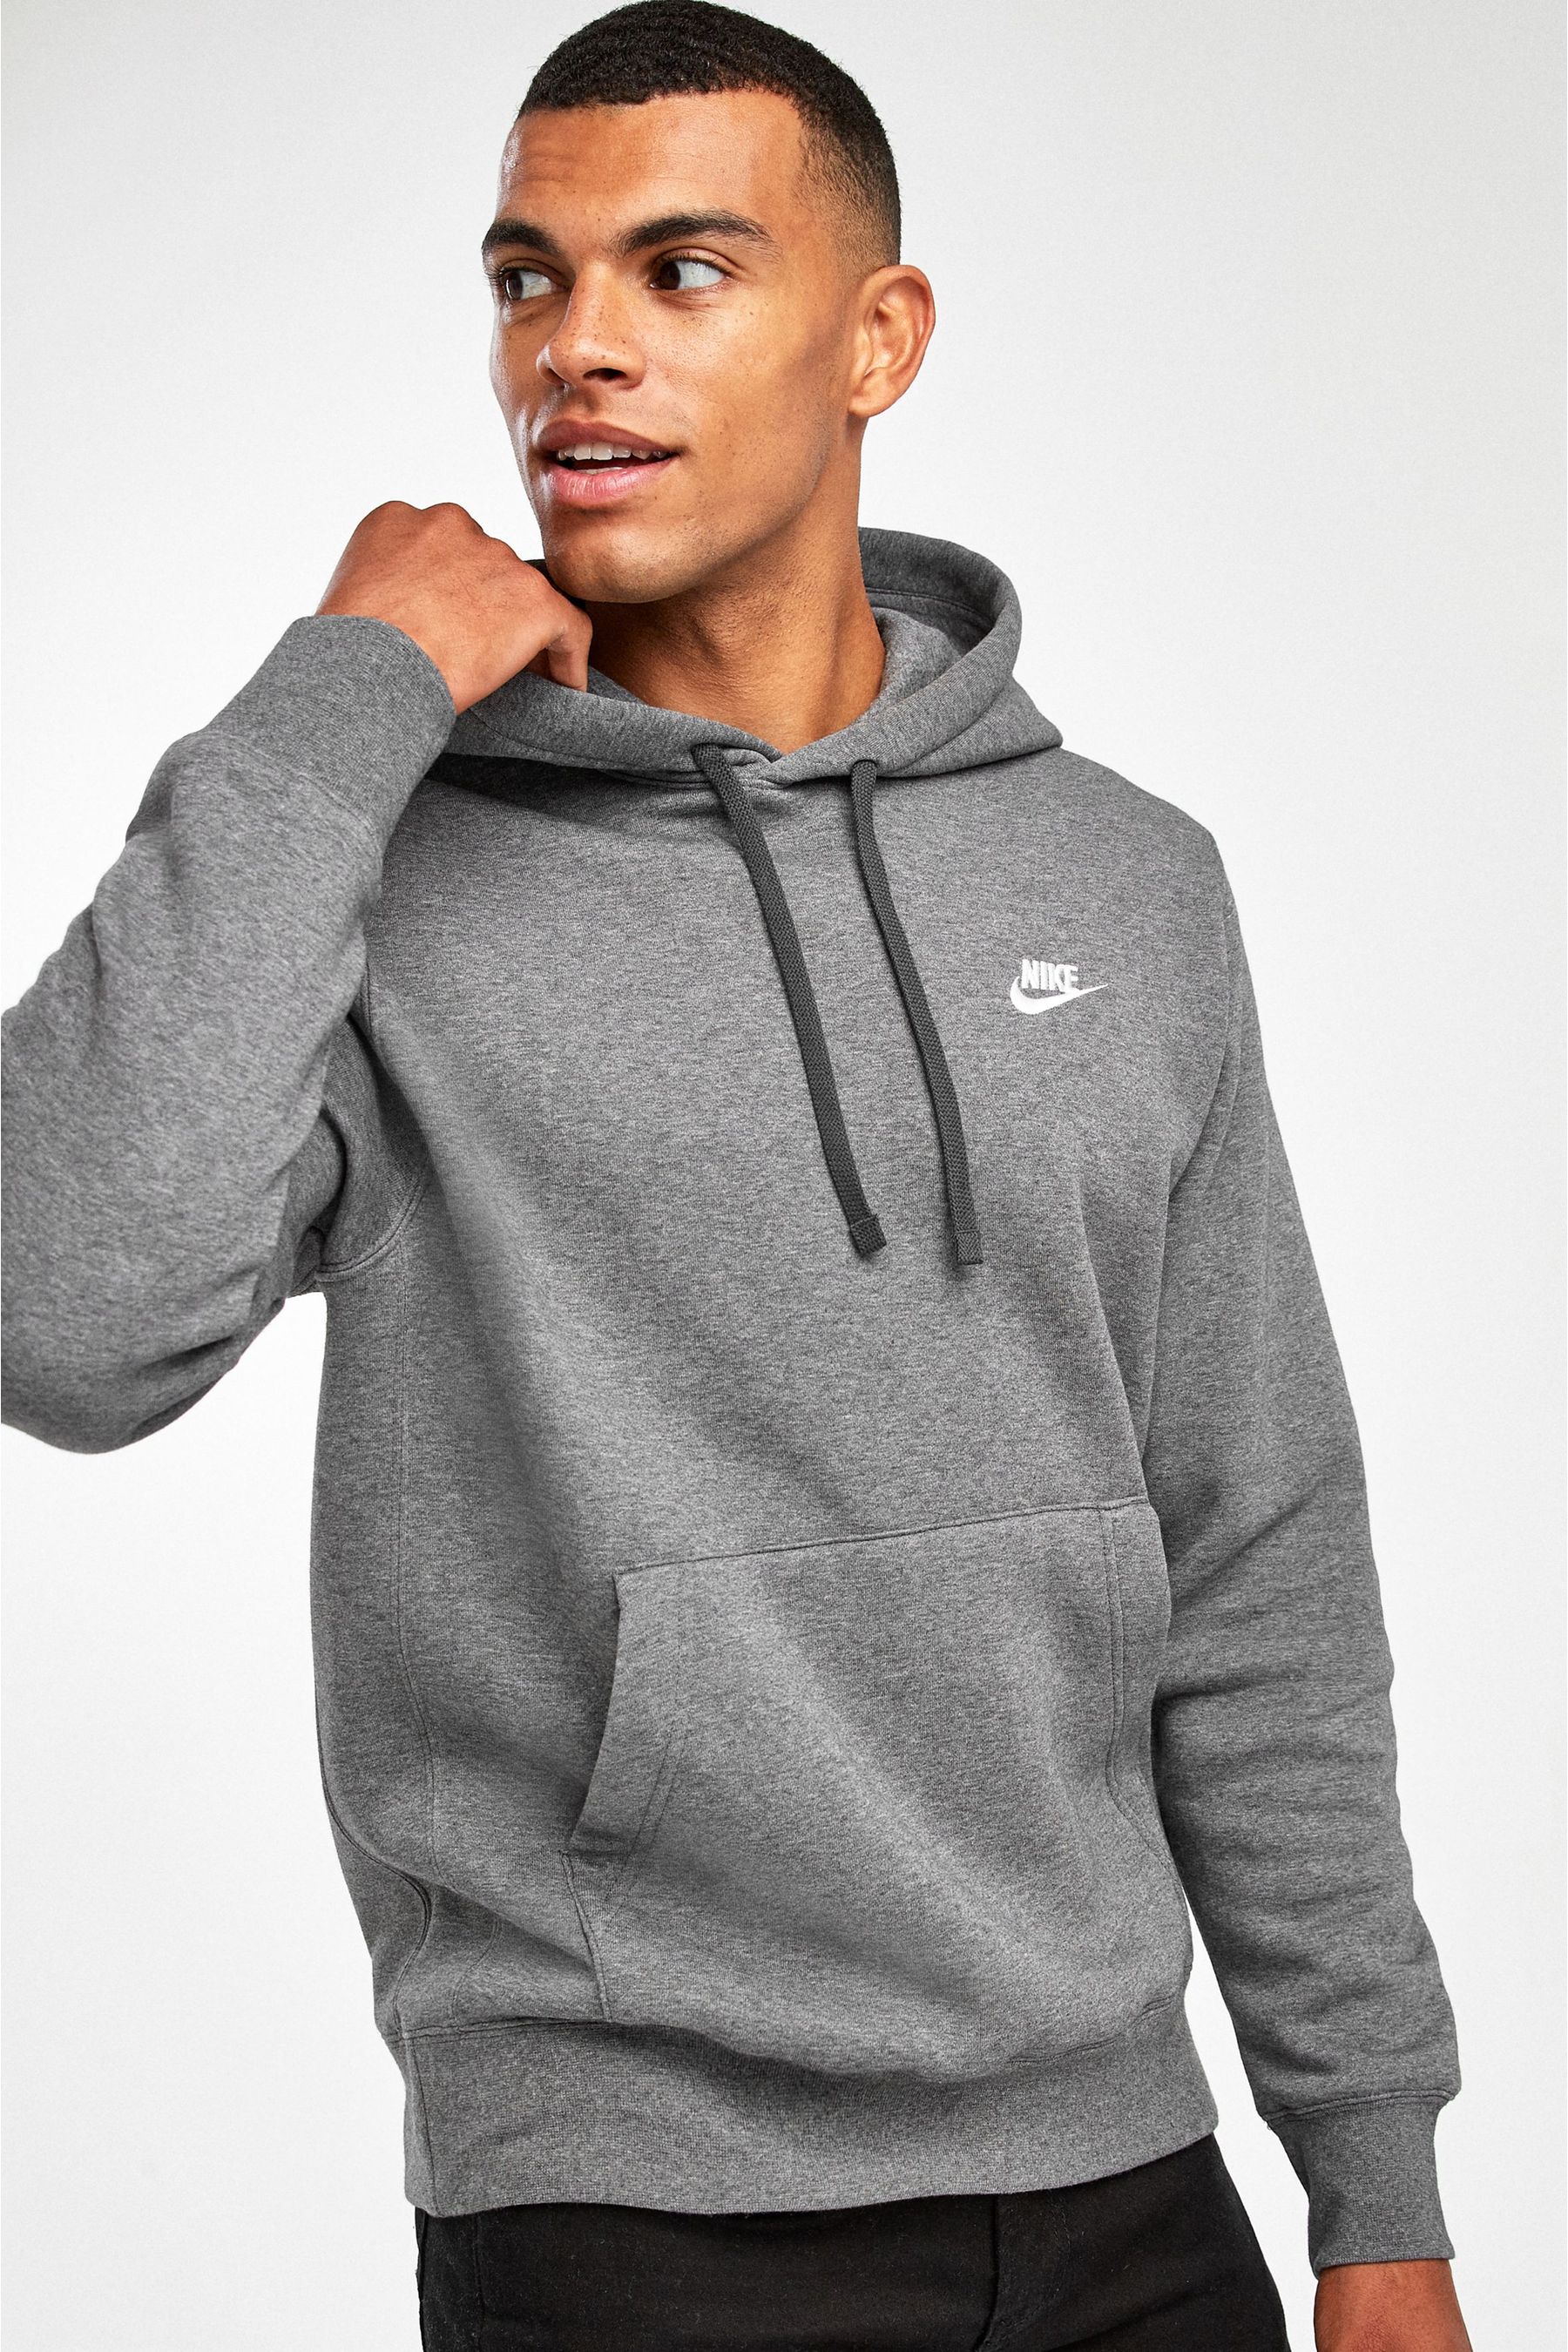 Buy Nike Dark Grey Club Pullover Hoodie from the Next UK online shop